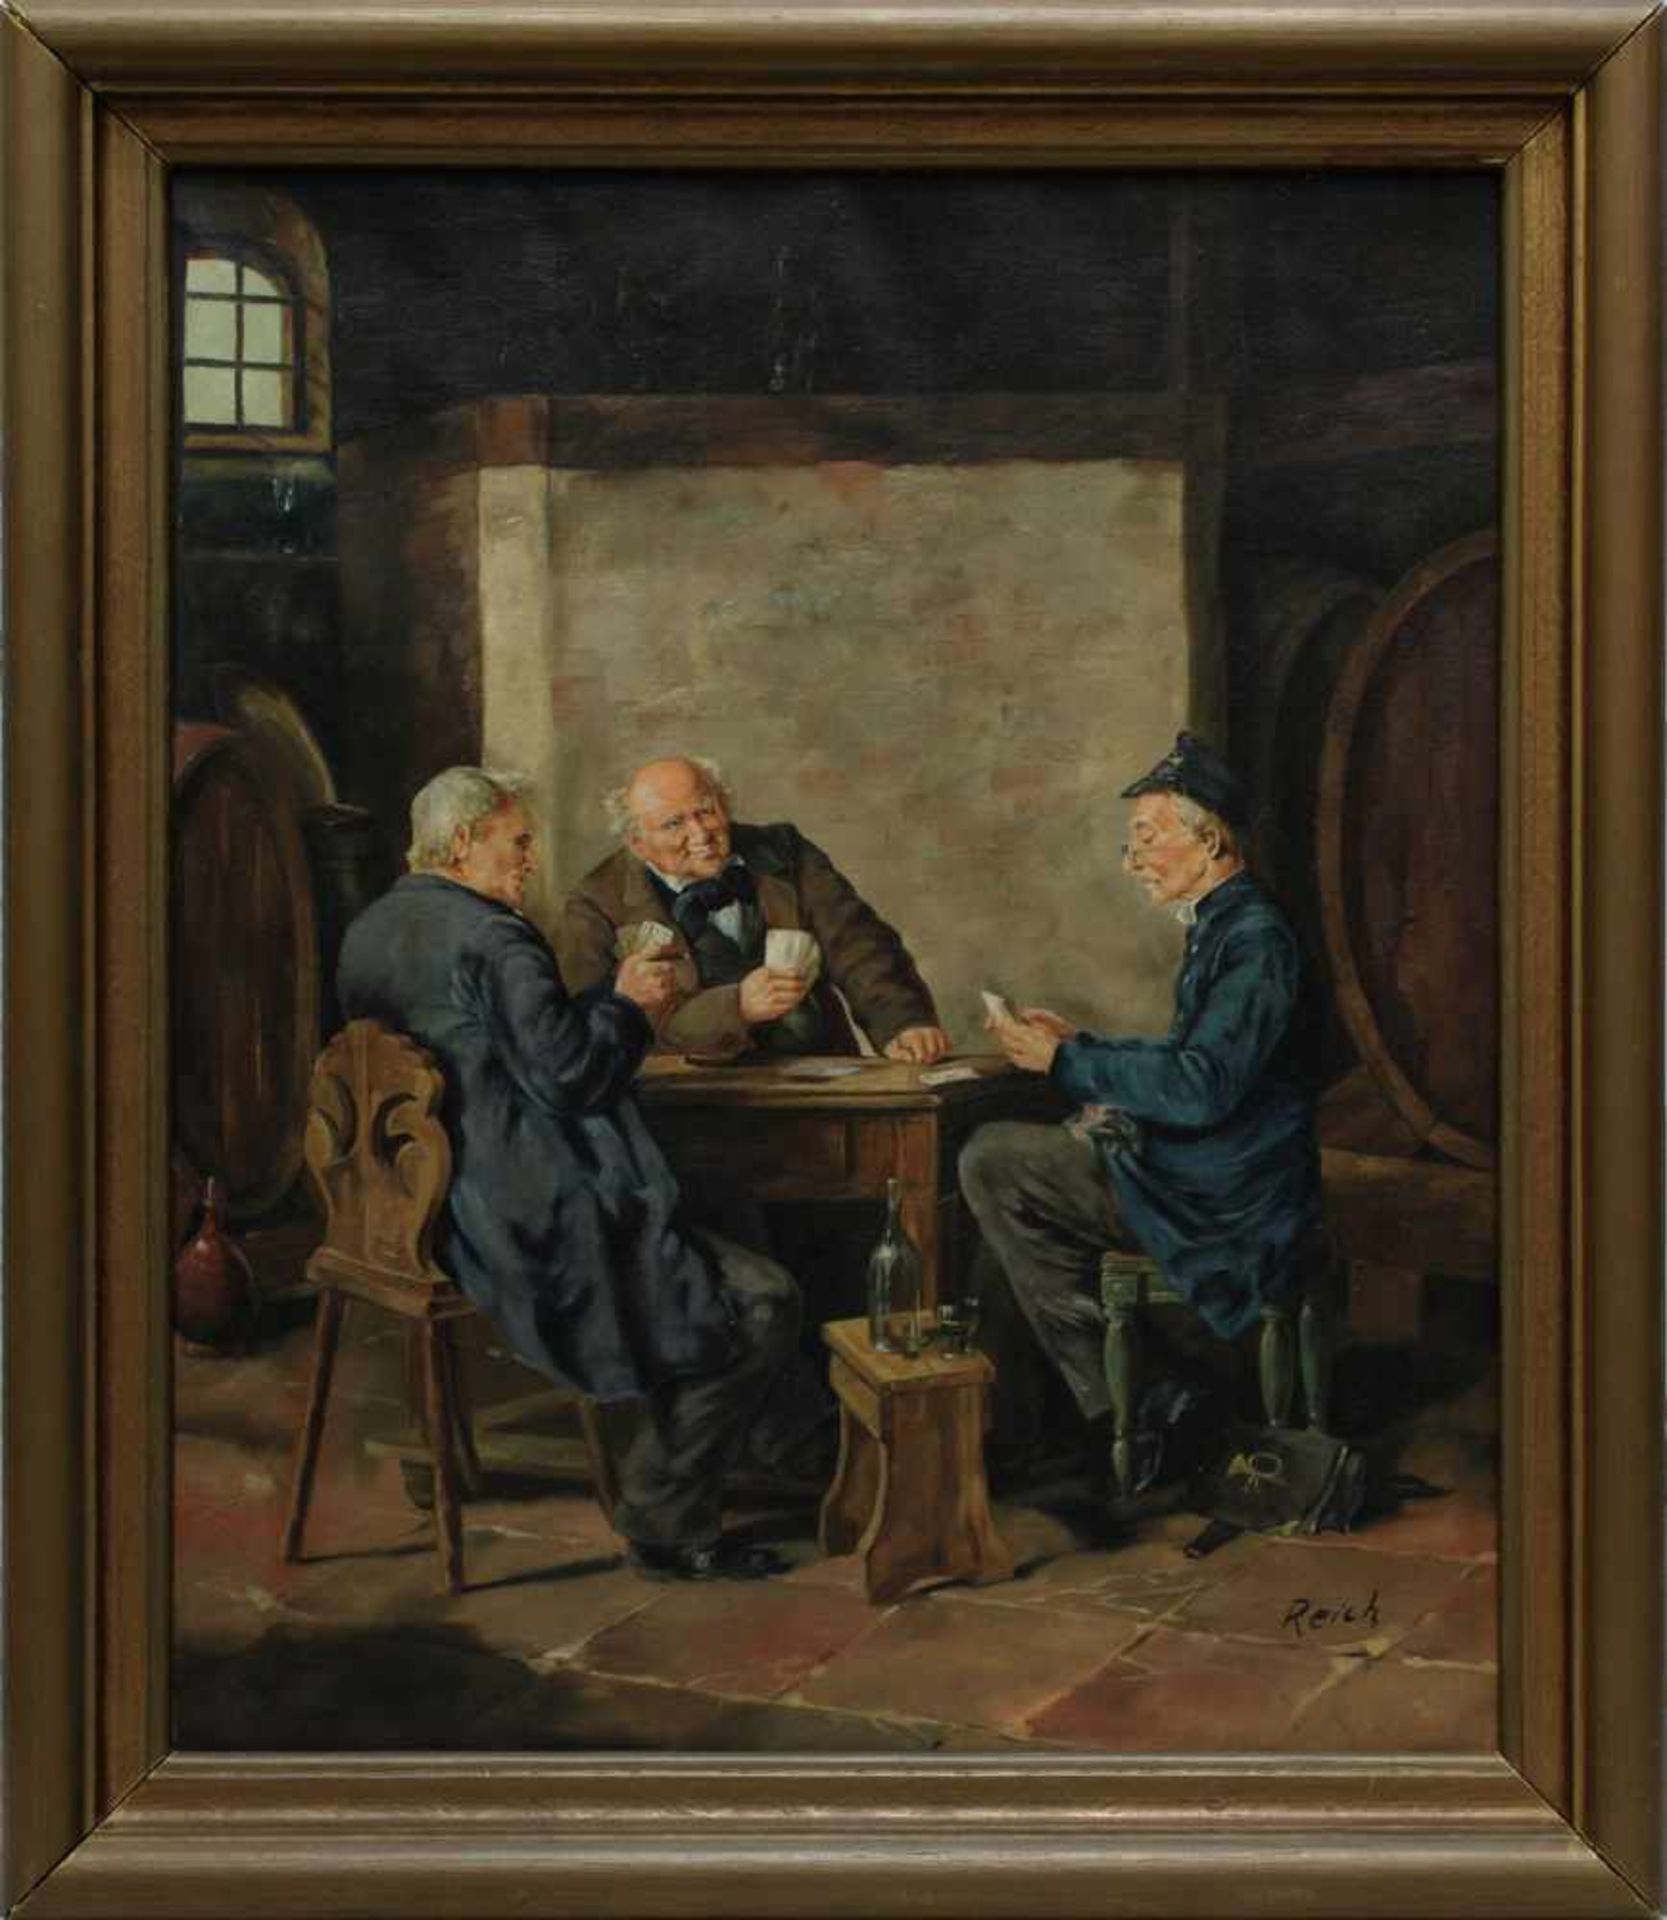 Reich (deutscher Künstler Mitte 20. Jh.), Briefträger beim Kartenspiel im Weinkeller, Öl auf